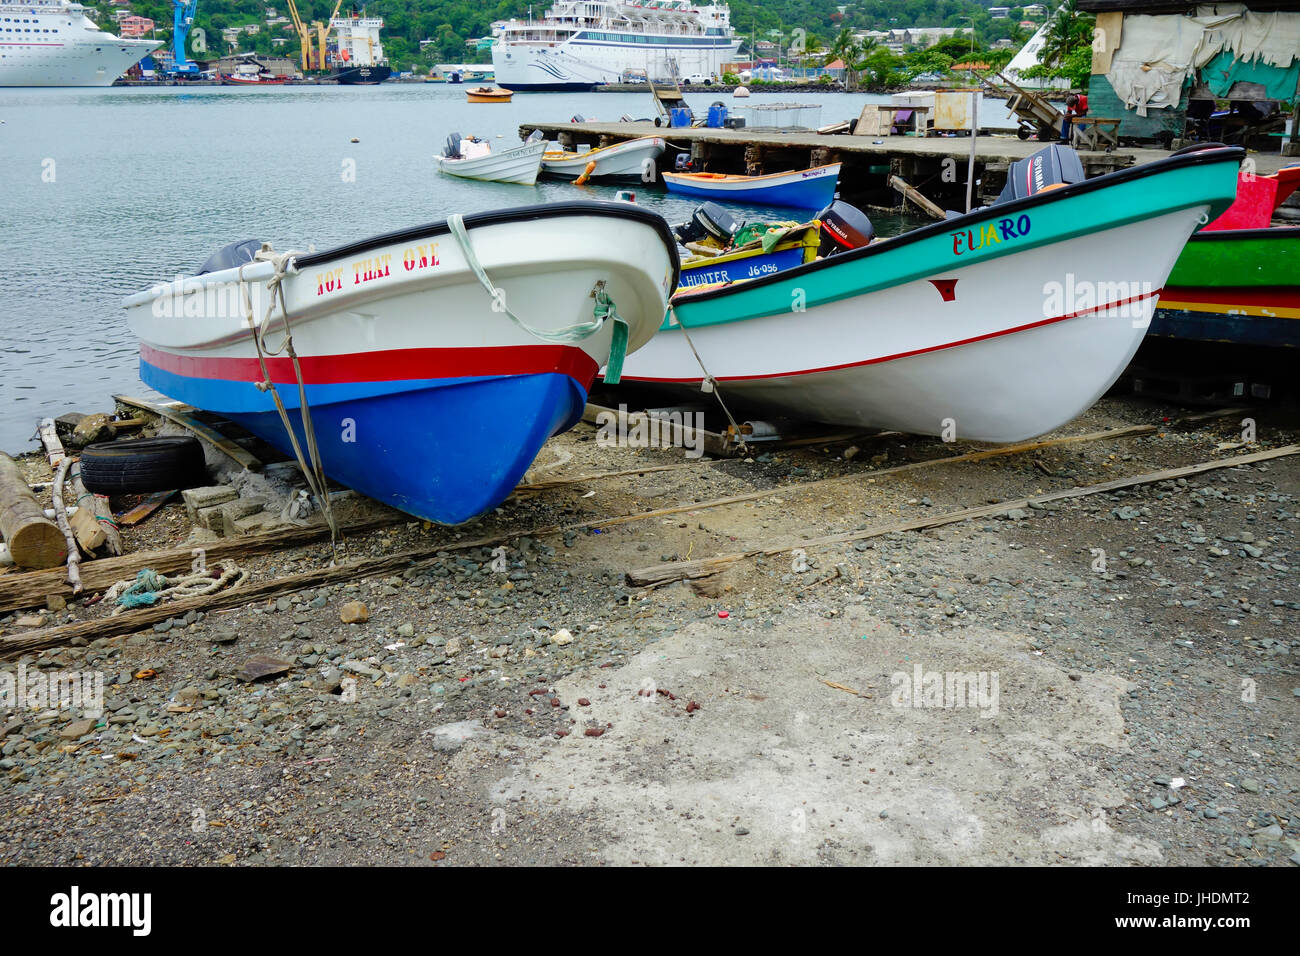 Los barcos de pesca en el puerto de pesca, Castries, Santa Lucía, Indias Occidentales Foto de stock